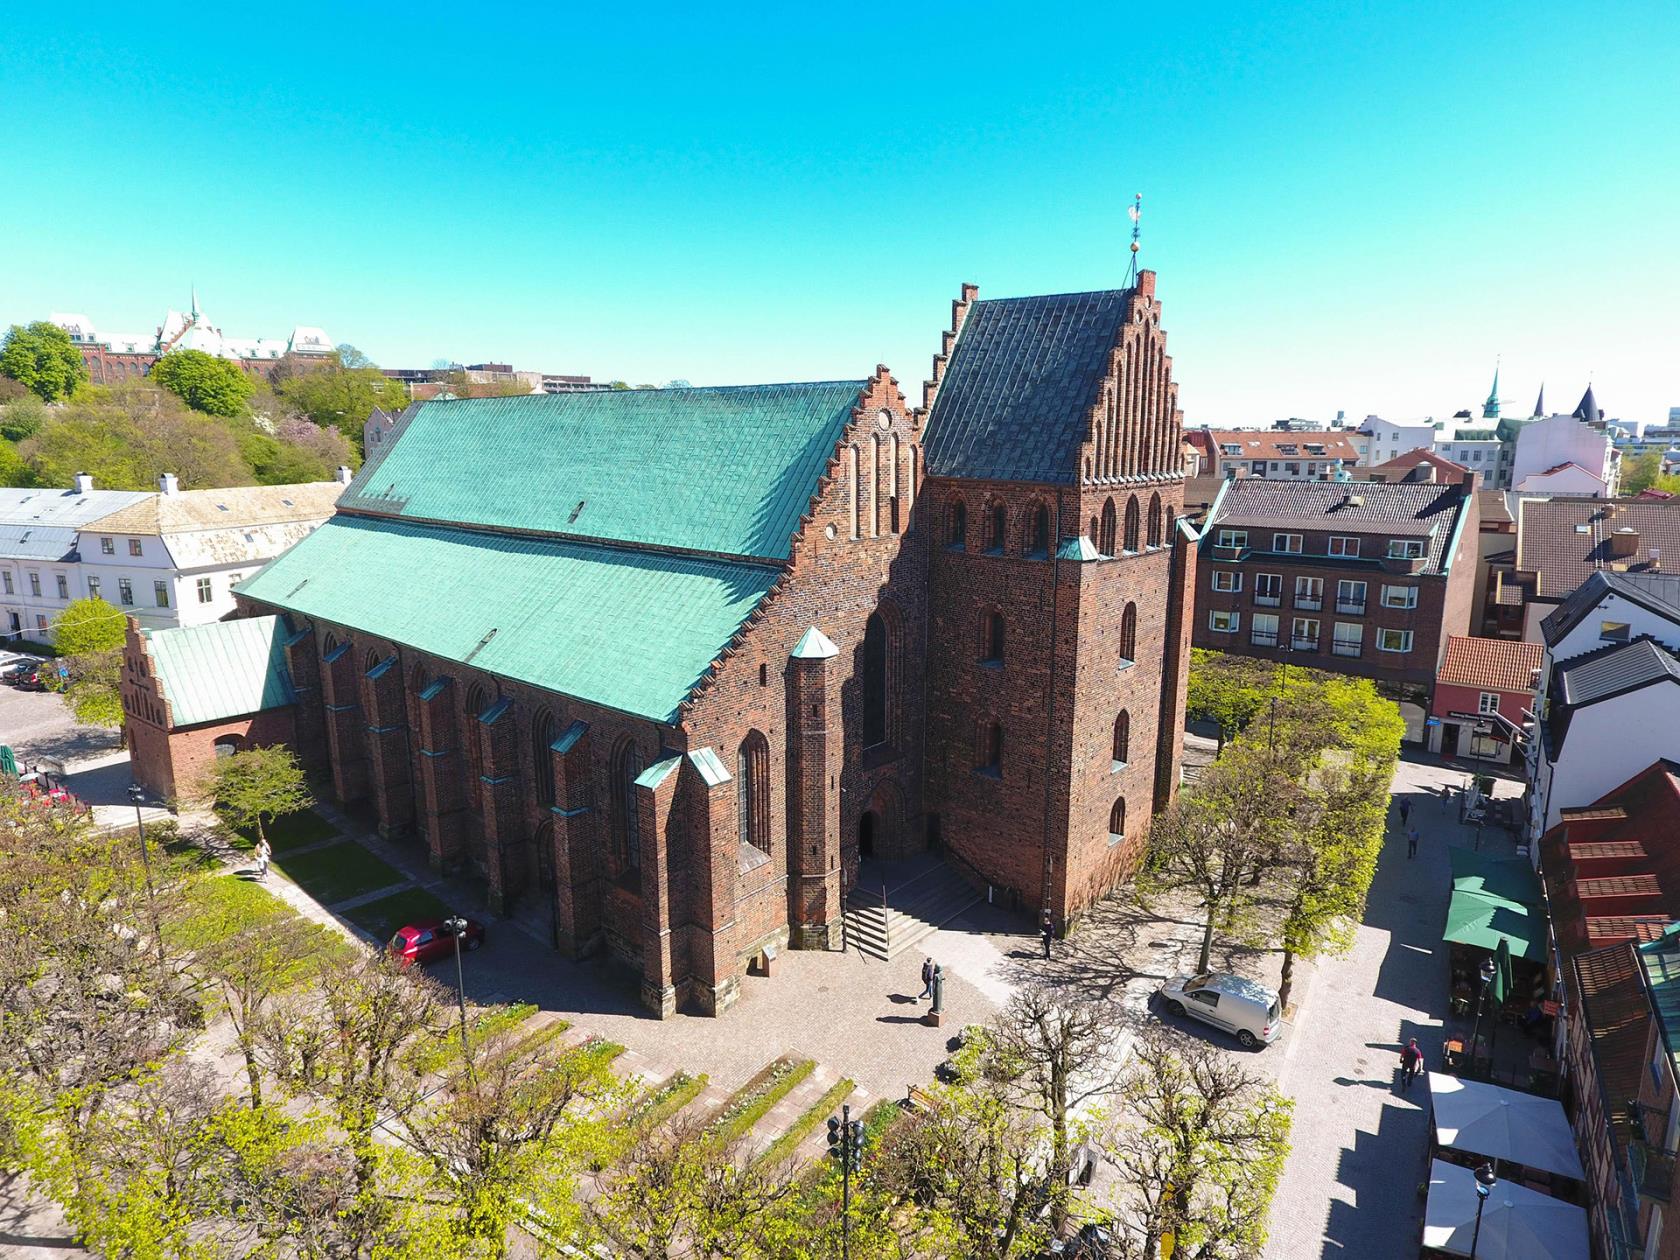 S:ta Maria kyrka i Helsingborg ses snett uppifrån. Det är en röd, medeltida tegelkyrka med koppartak.